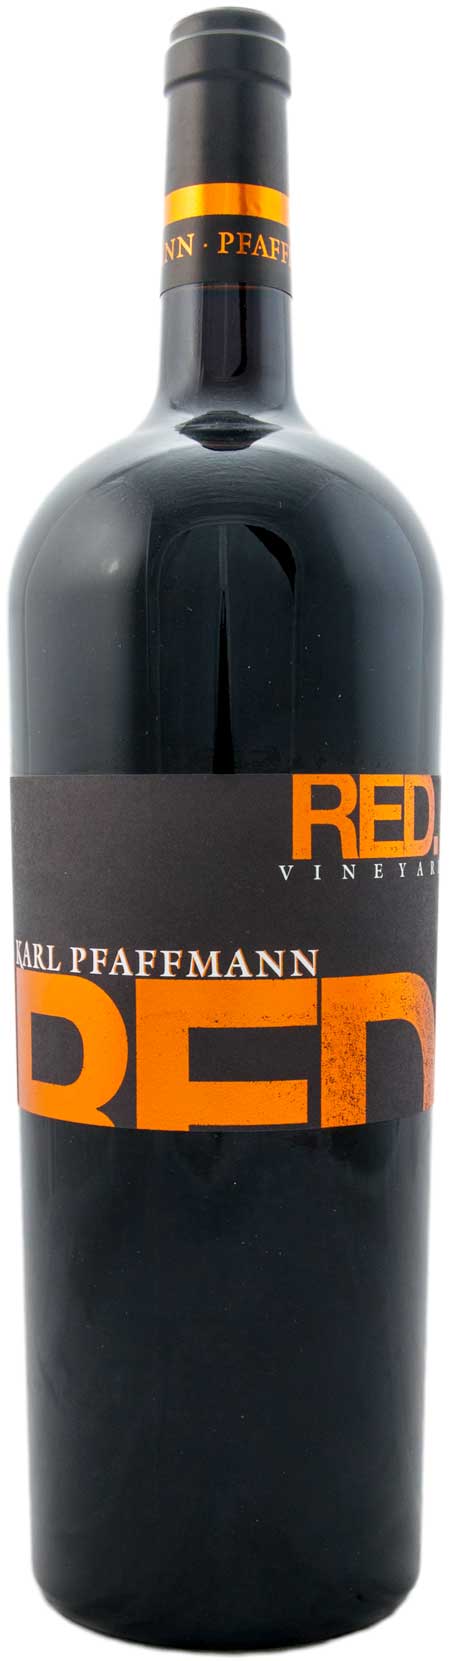 Red.Vineyard - Cuvée - Qualitätswein - trocken - Weingut Karl Pfaffmann - MAGNUM